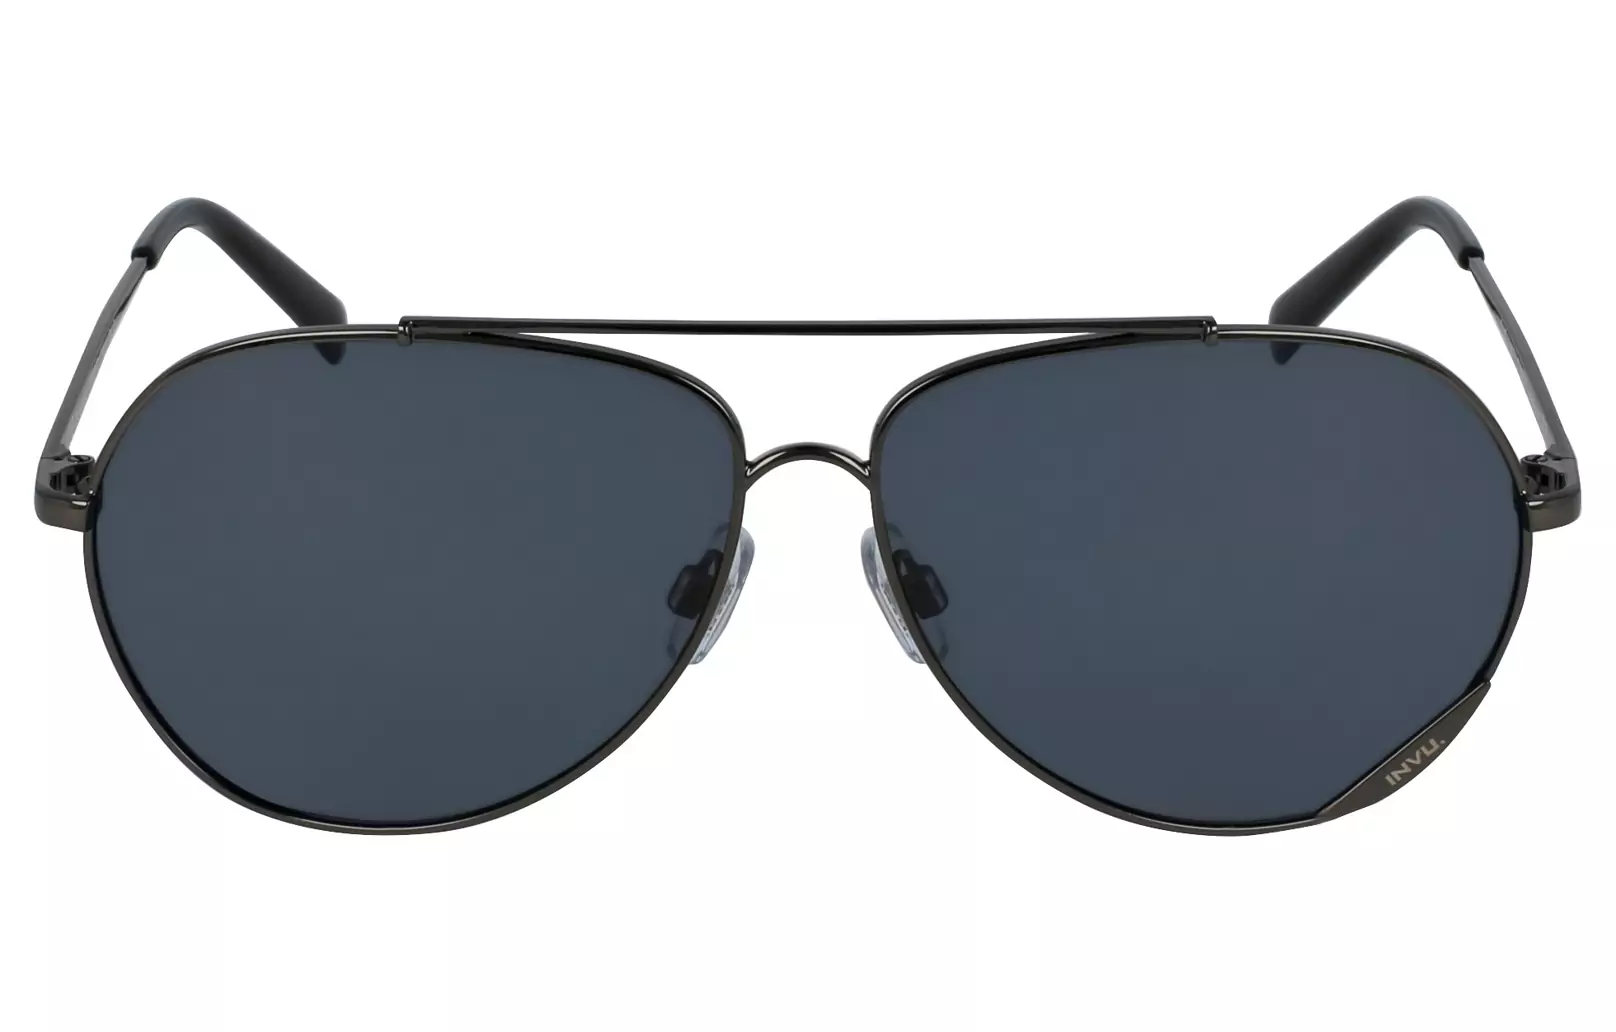 Sunglasses - Paris - Sunglasses - Swiss Design - Invushop